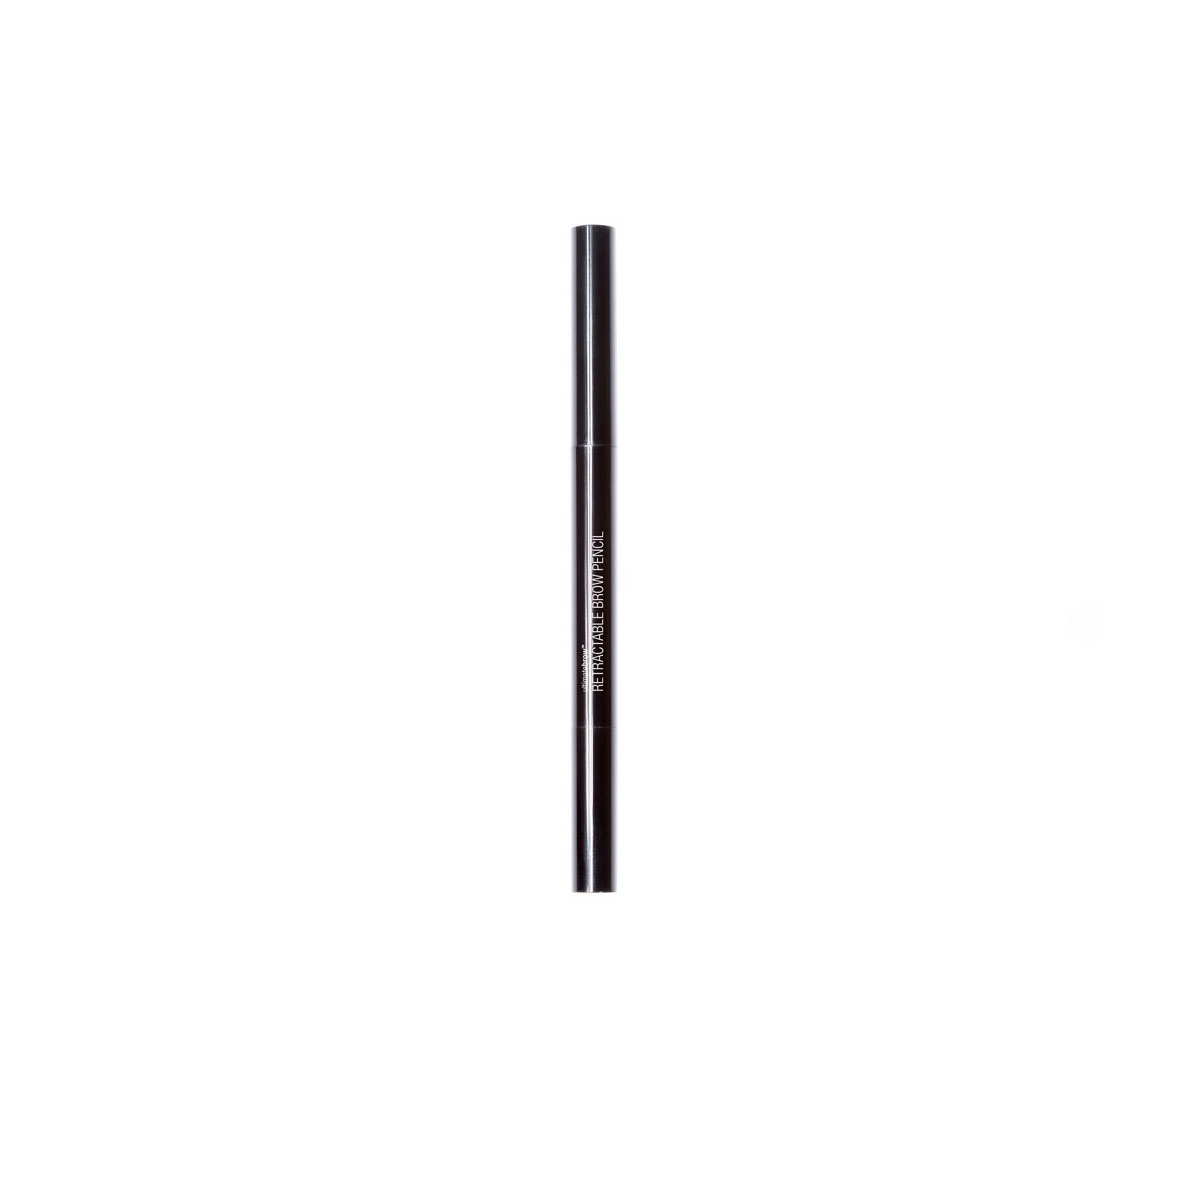 Ultimate brow retractable pencil